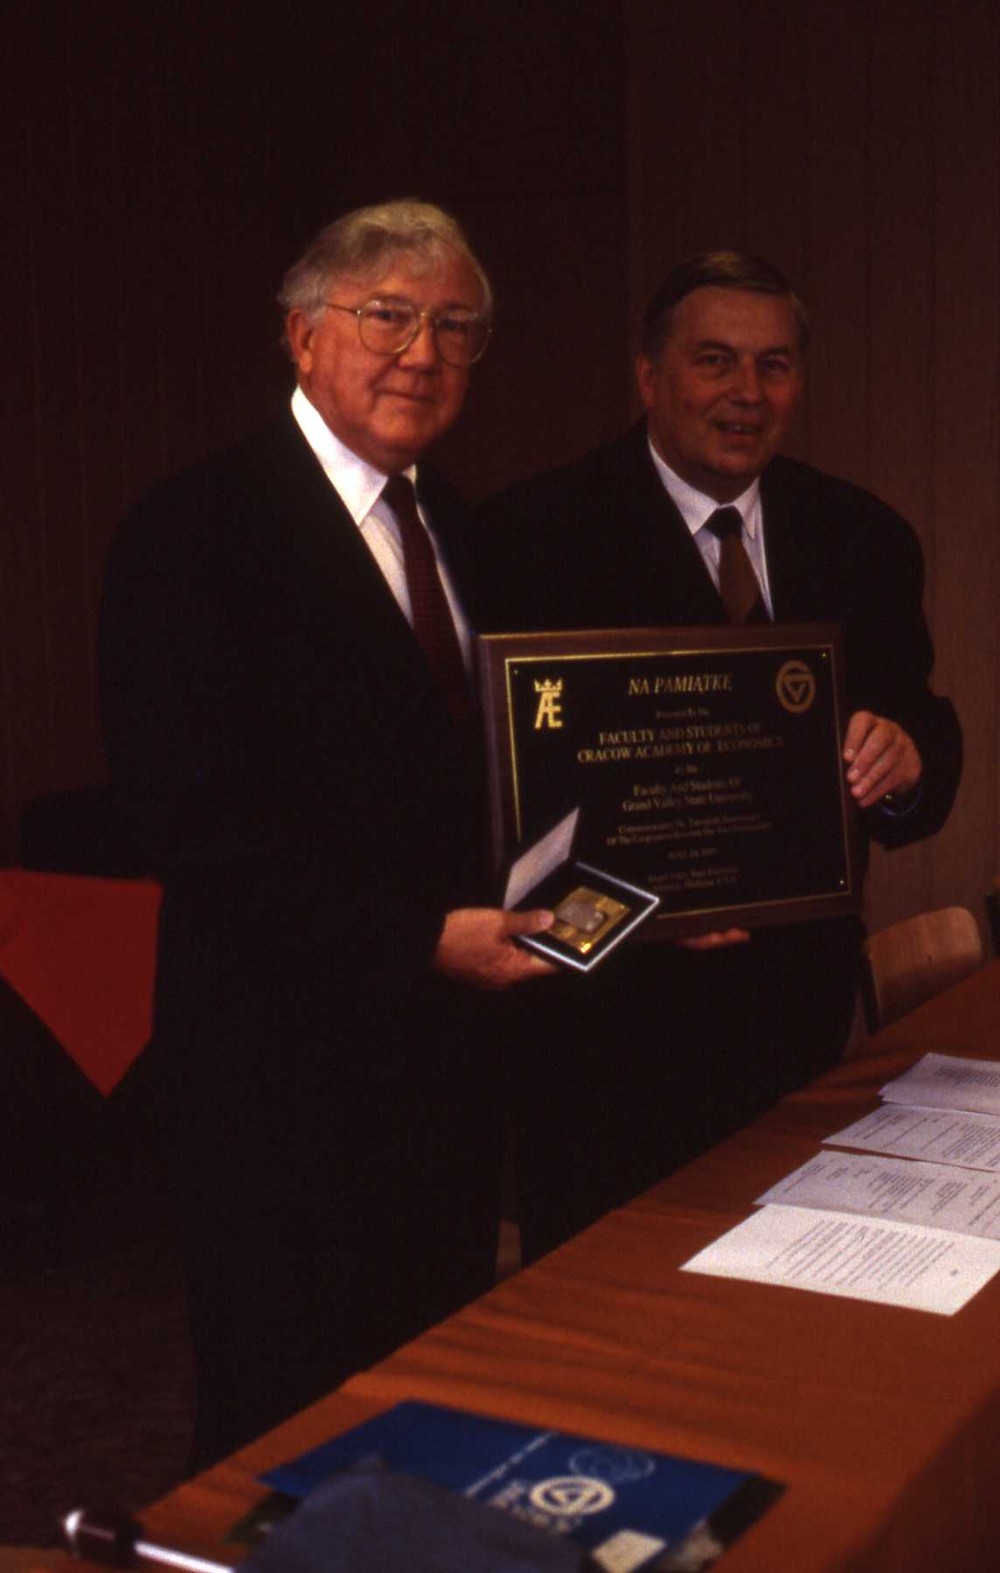 GVSU & CUE 1984 - 1995, Al Walczak